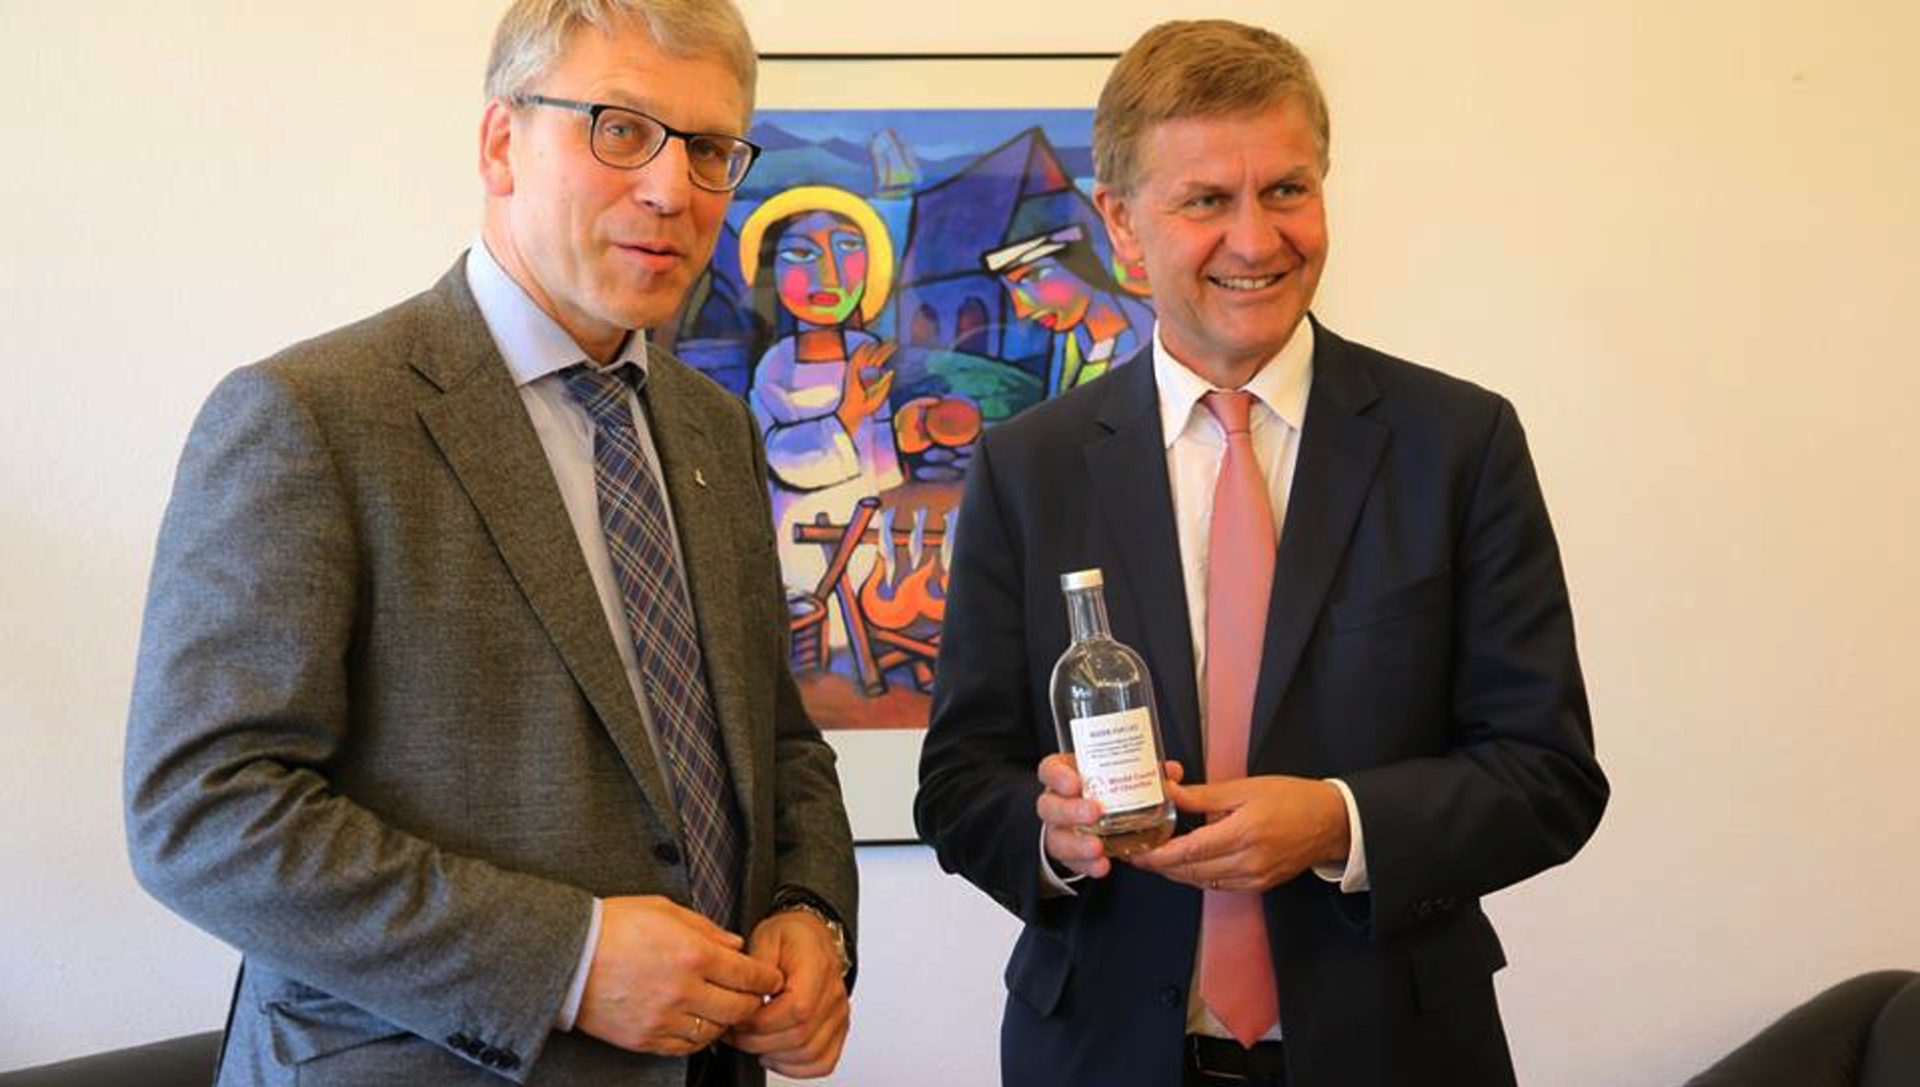 Zwei prominente norwegische Führungspersönlichkeiten haben sich in Norwegen getroffen, um über Umweltthemen zu reden